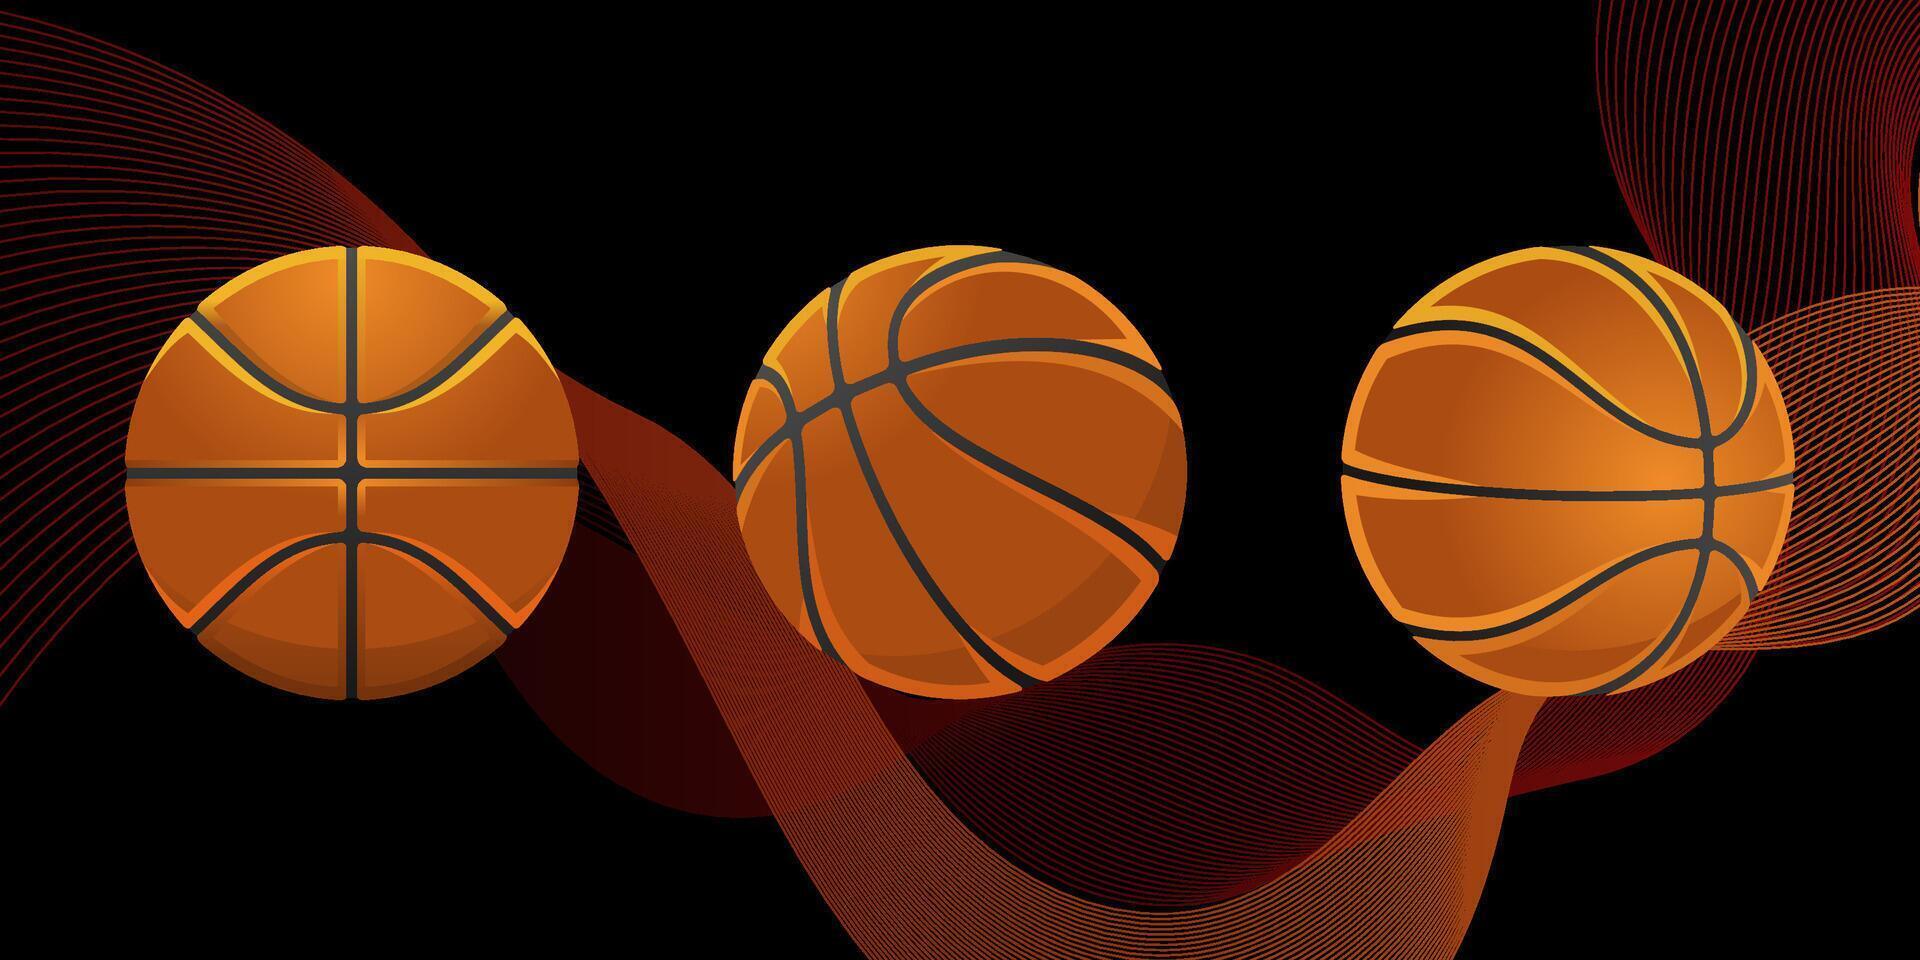 verschillend hoek en kant van bal voor basketbal vector illustratie